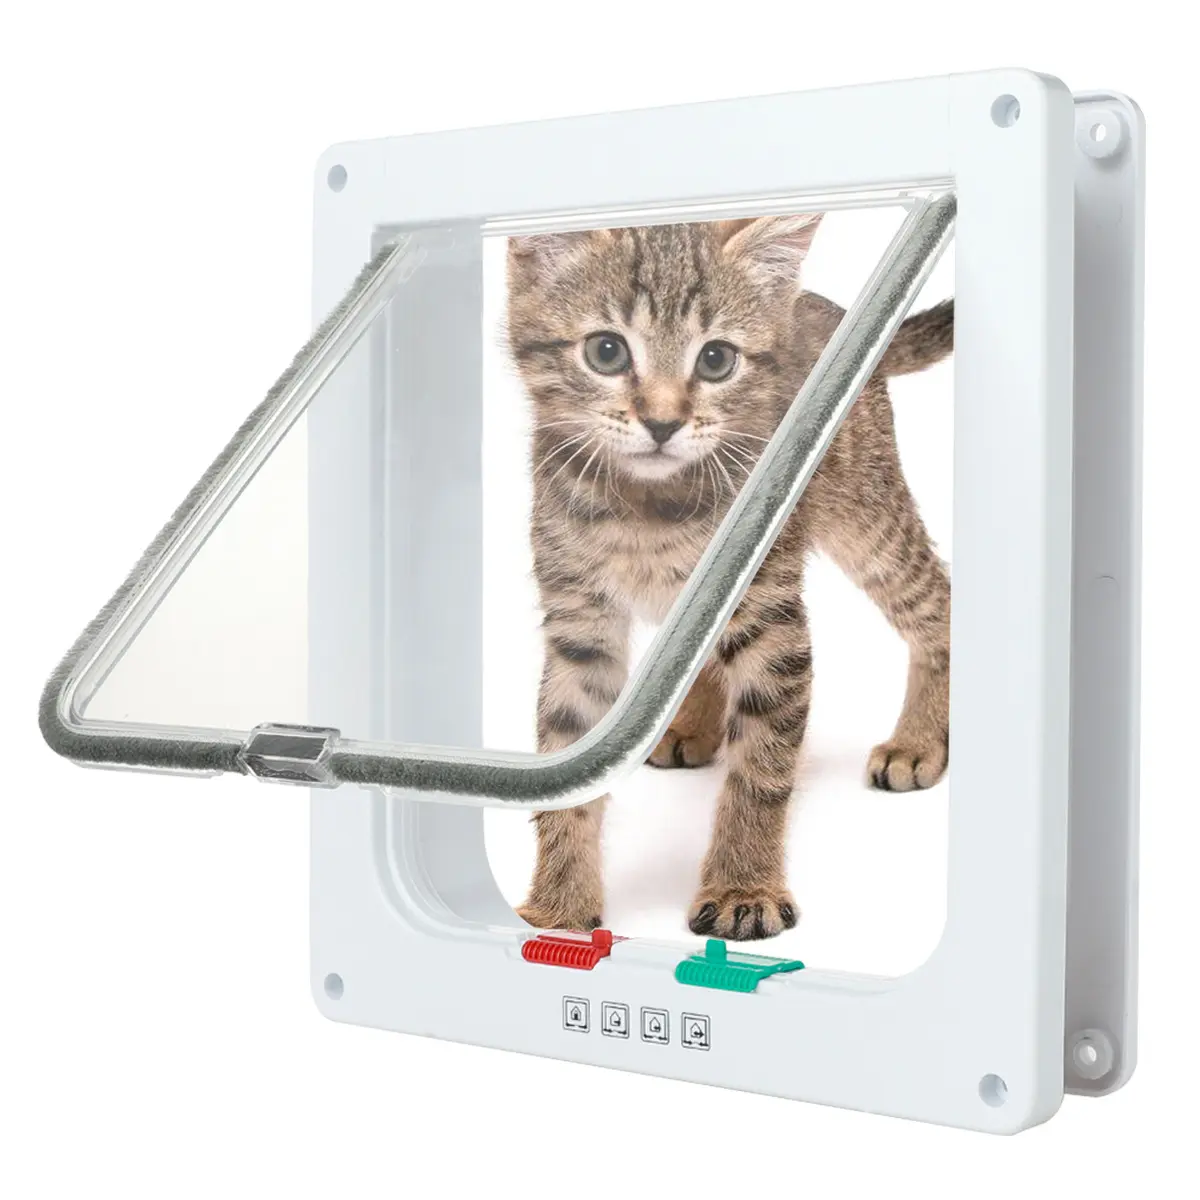 Porta de gato de 4 vias com fechadura, porta com aba para gato e porta interior, portas para animais de estimação, adequadas para janela e doo